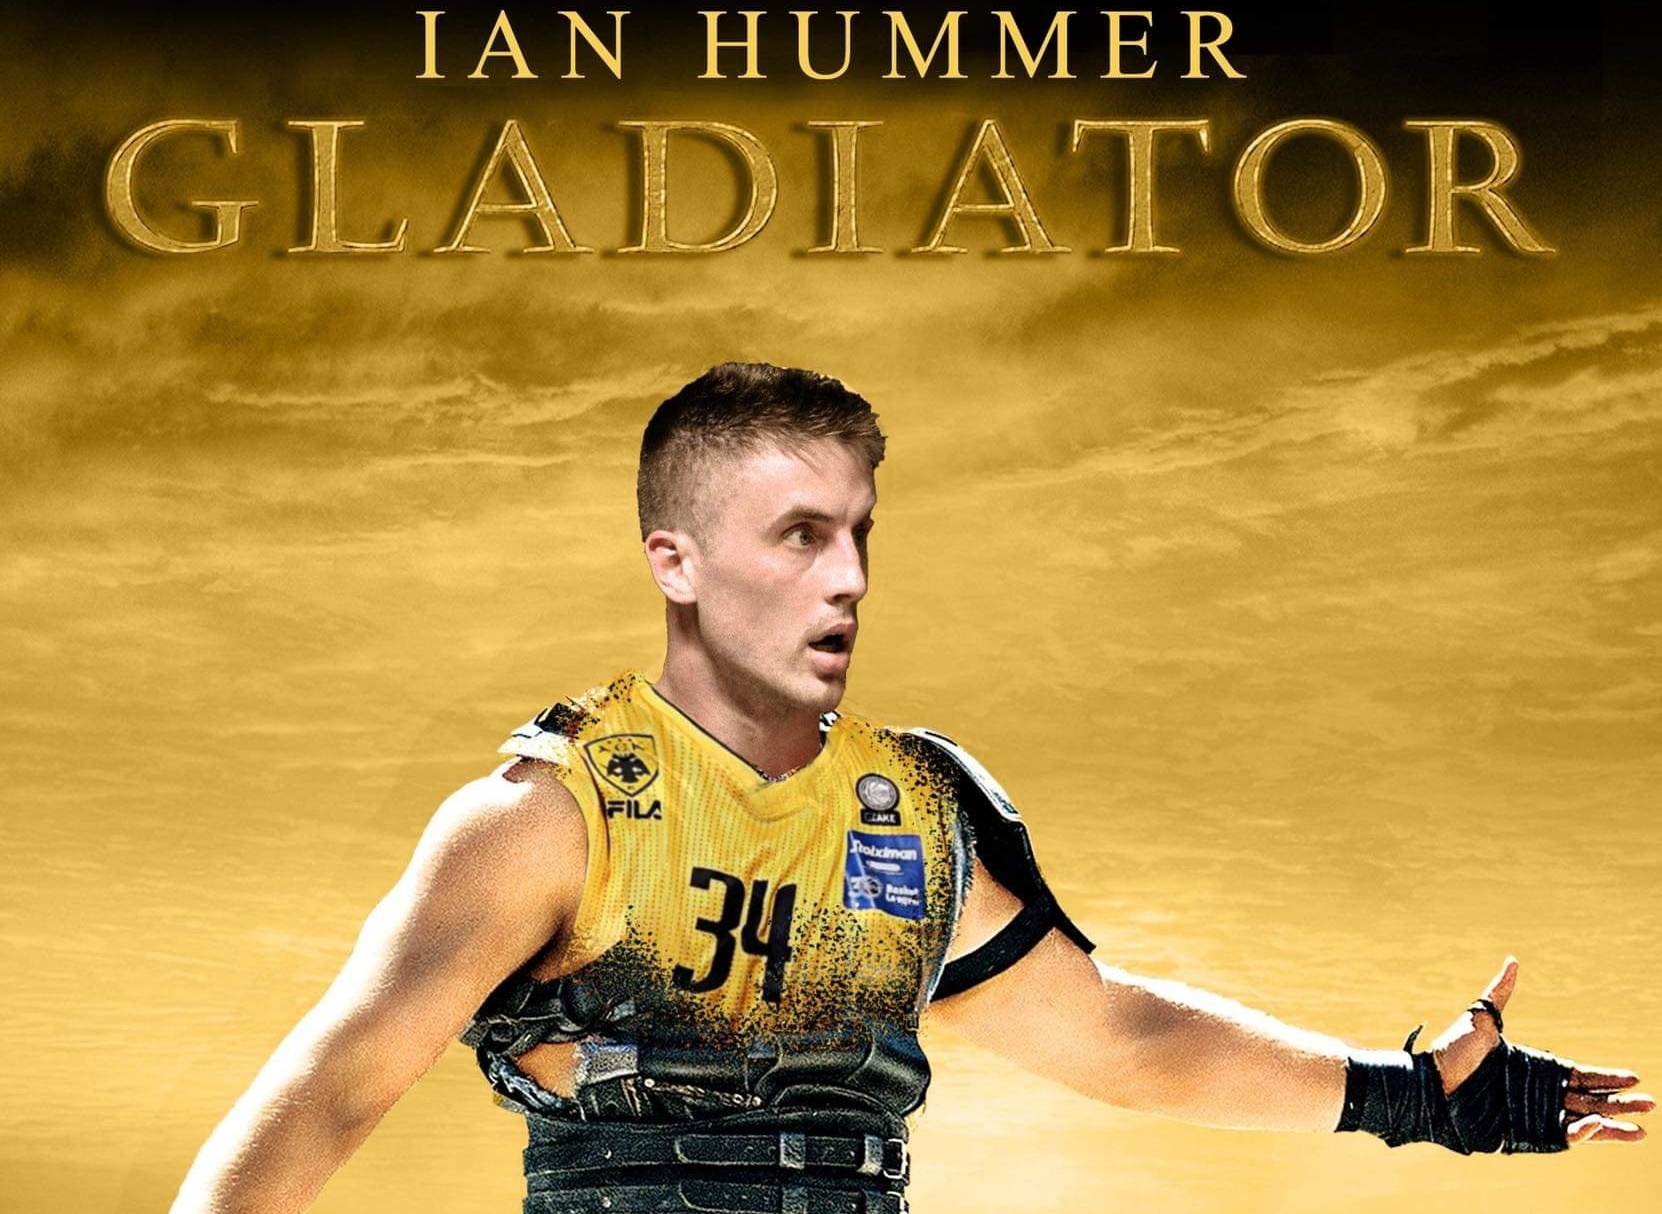 ΑΕΚ: Κράτησε τον «Gladiator» Ίαν Χάμερ ως το τέλος της σεζόν